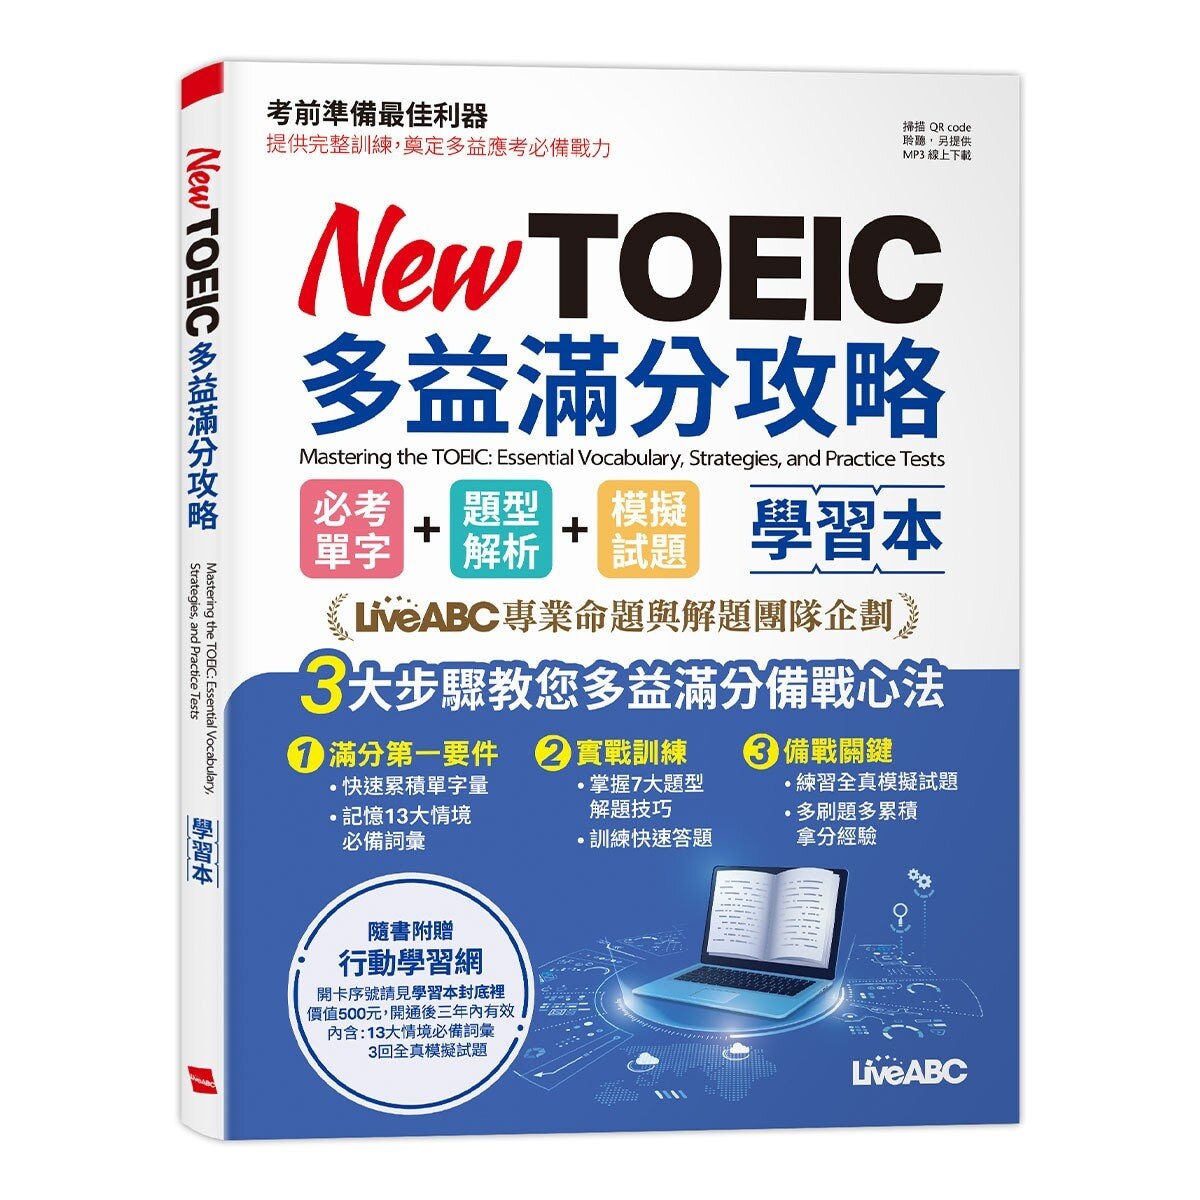 New TOEIC多益滿分攻略 學習本: 必考單字+題型解析+模擬試題